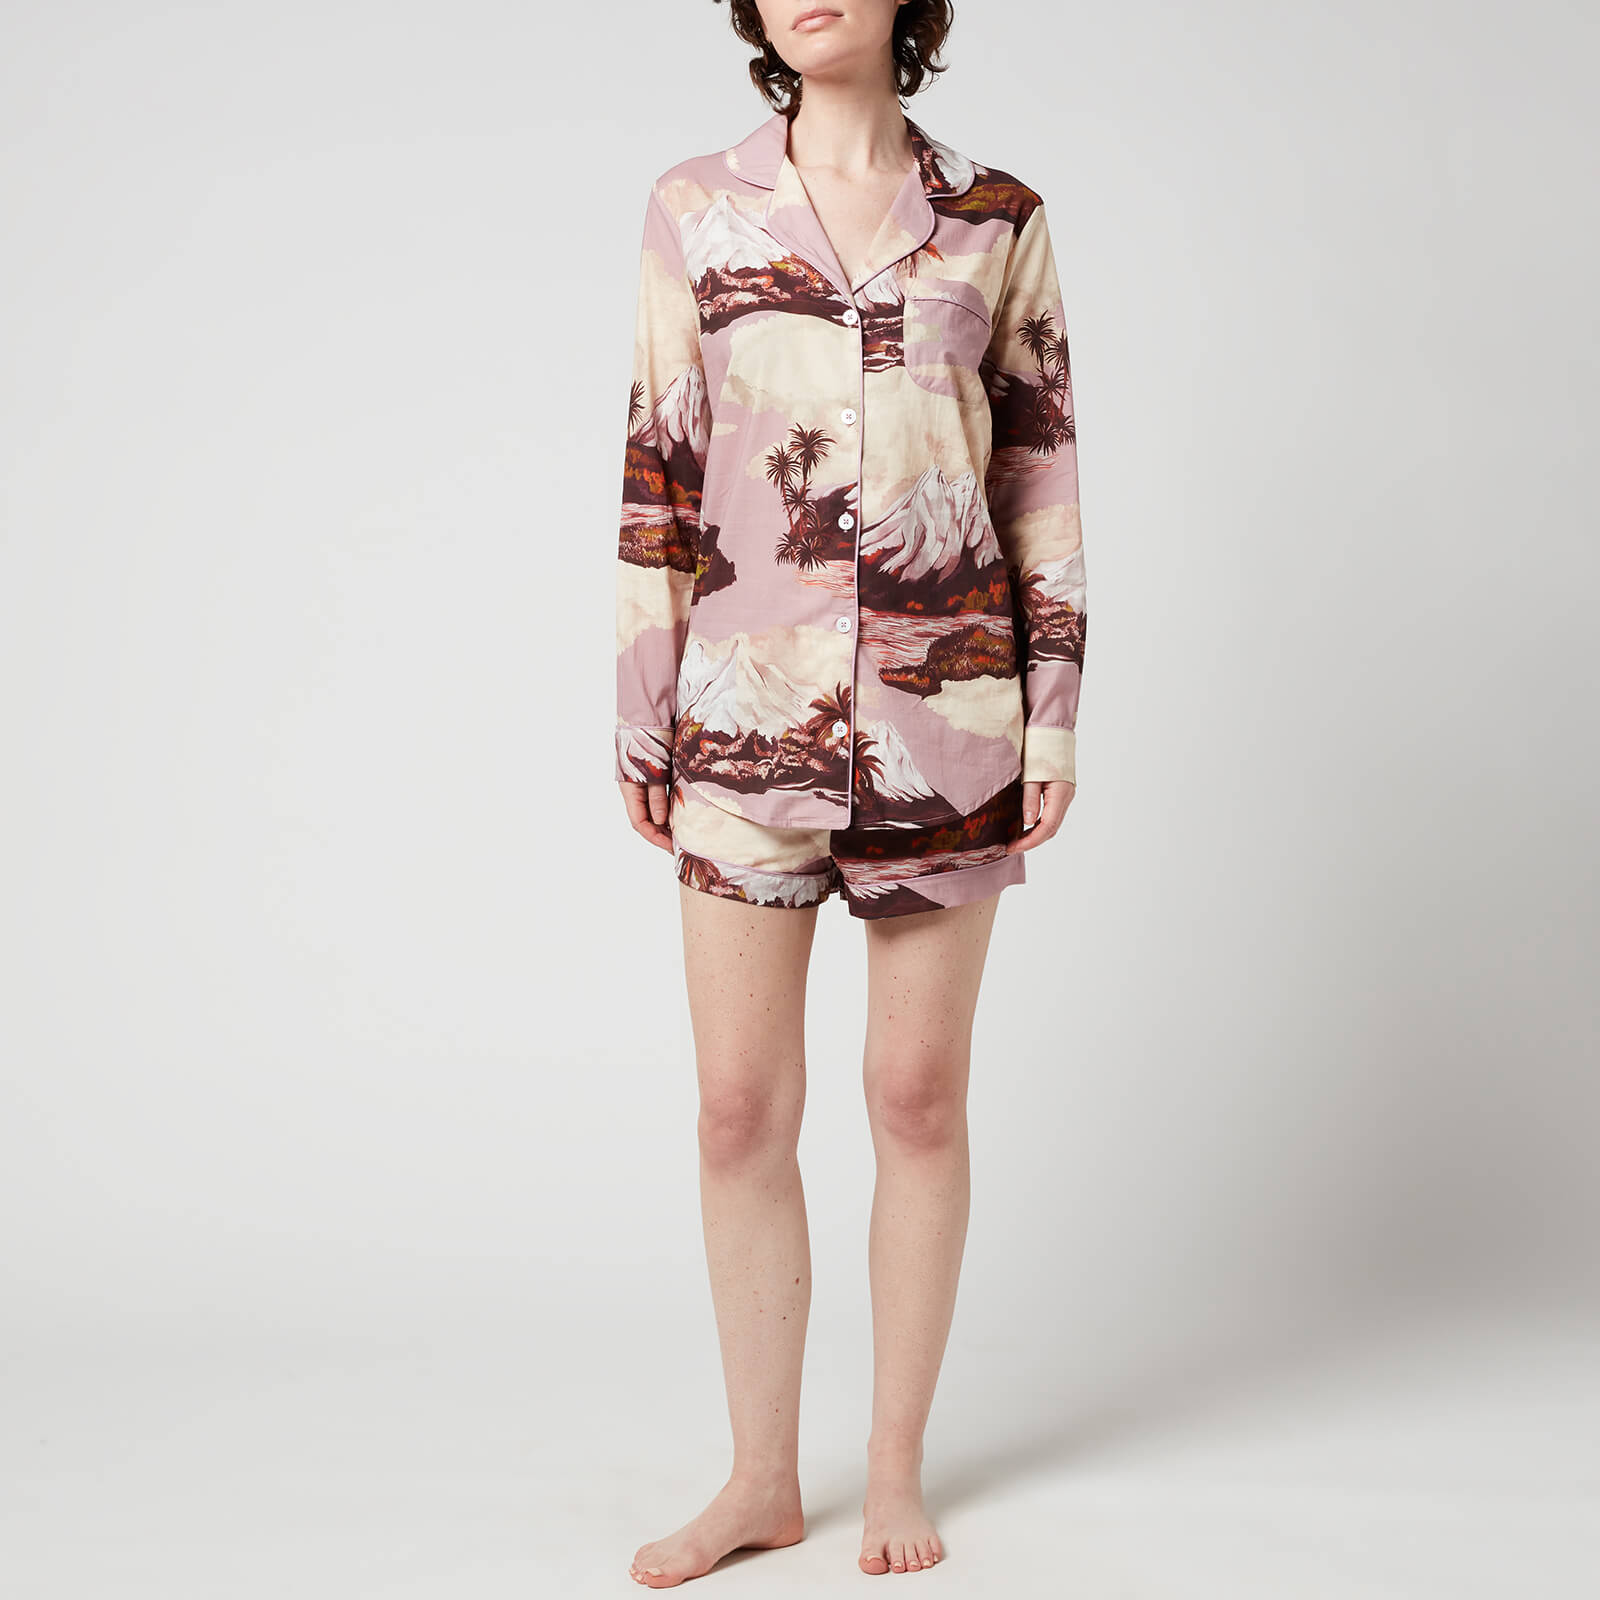 desmond & dempsey women's wakatipu signature pyjama set - cream/lavender - xs